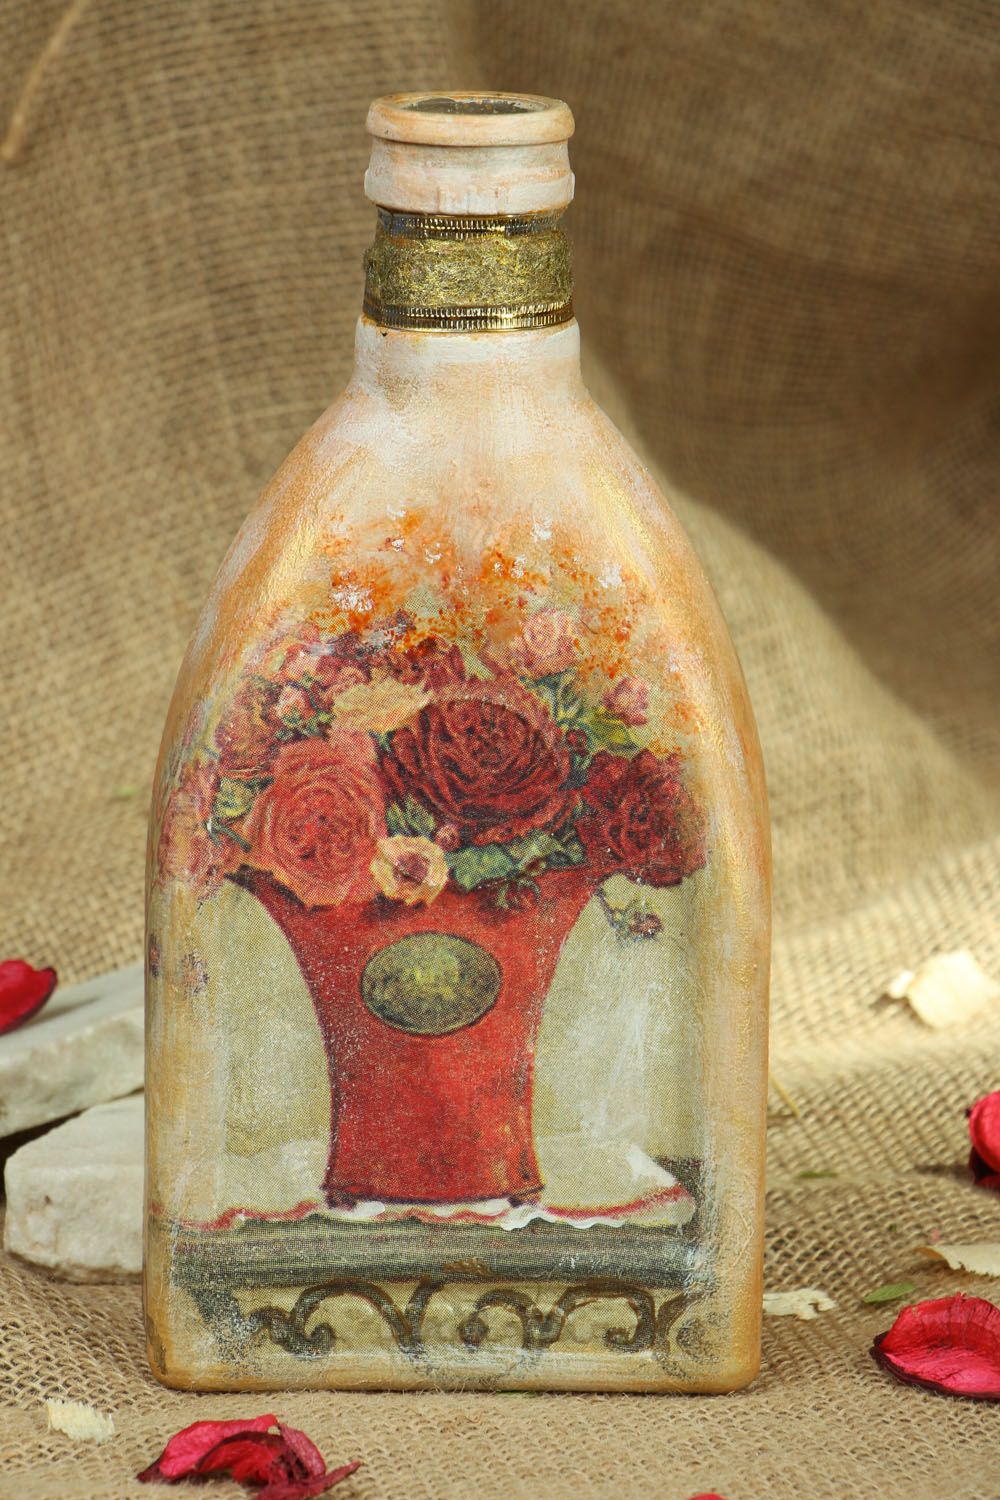 Homemade decorative bottle photo 5